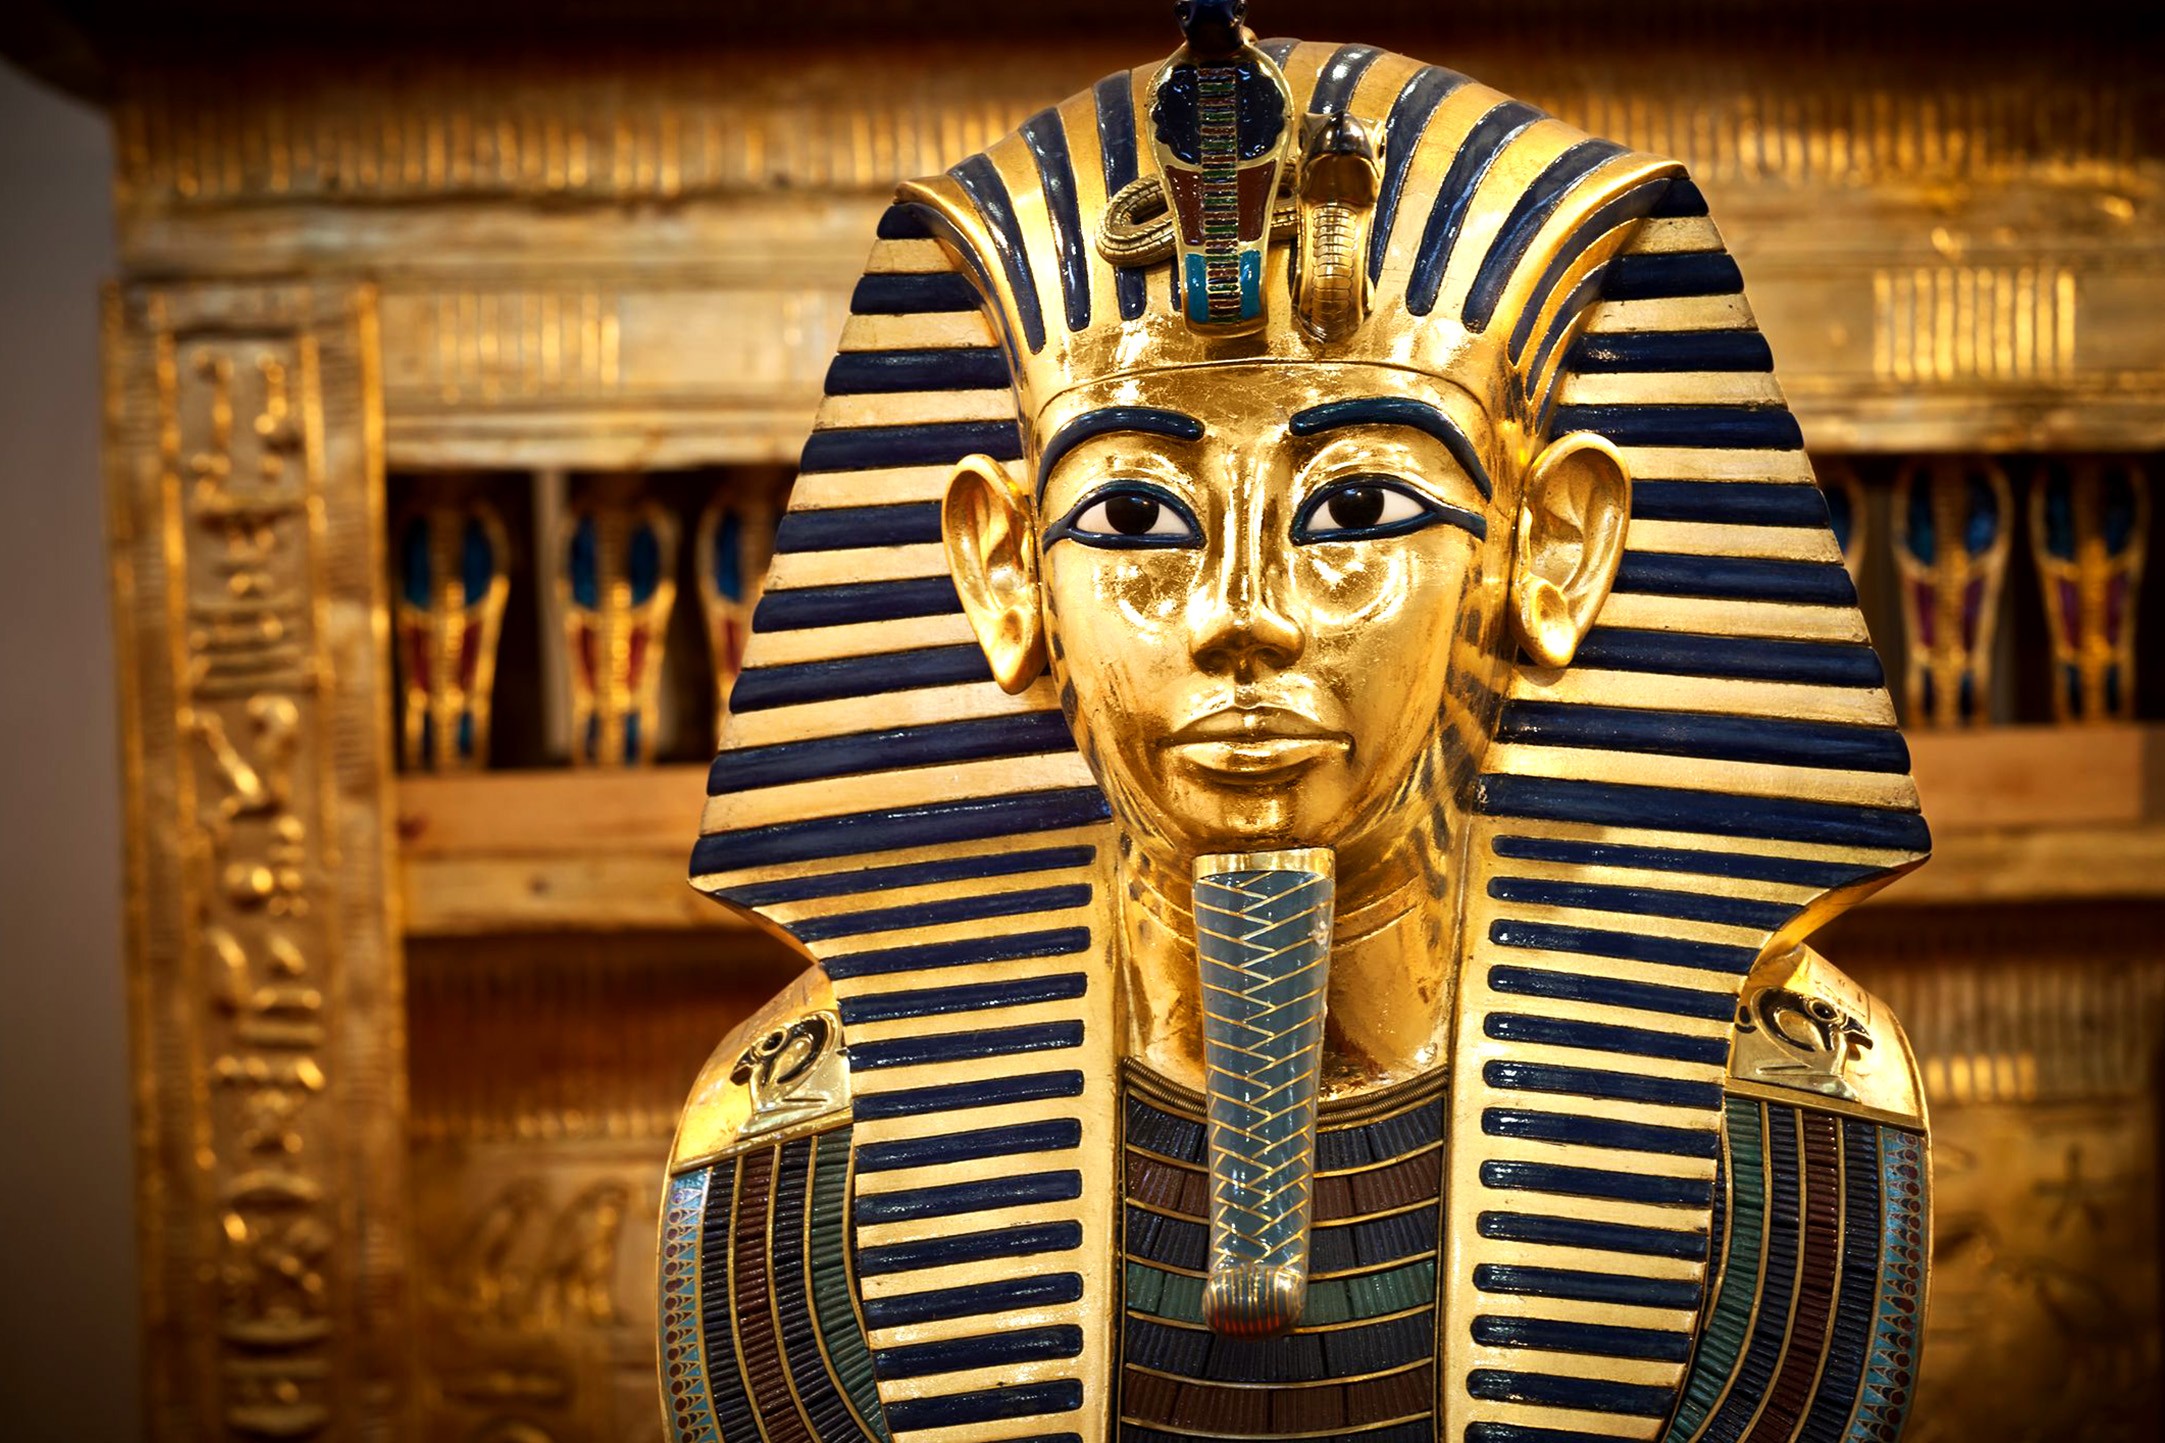 Сообщение о древнем египте — культура и искусство, боги и религия, храмы и пирамиды